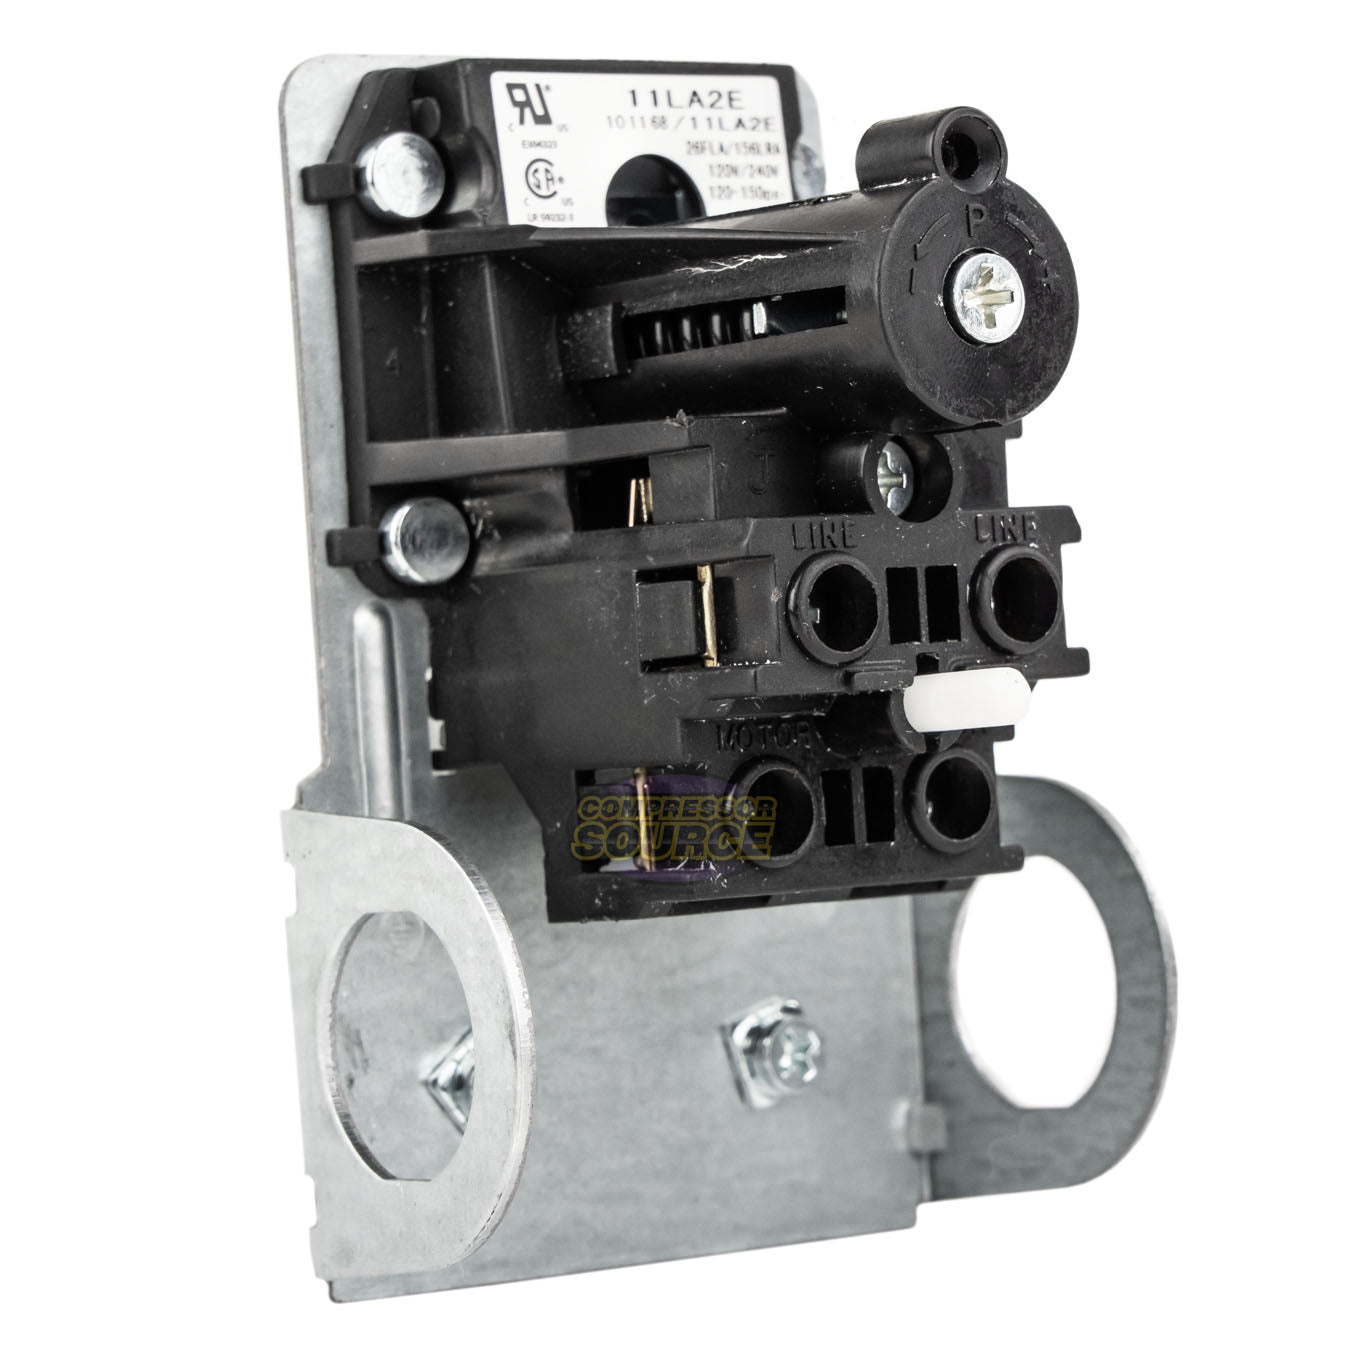 Condor 11LA2E Pressure Switch Control Valve 120-150PSI 1 Port 1/4" FNPT MDR11/11